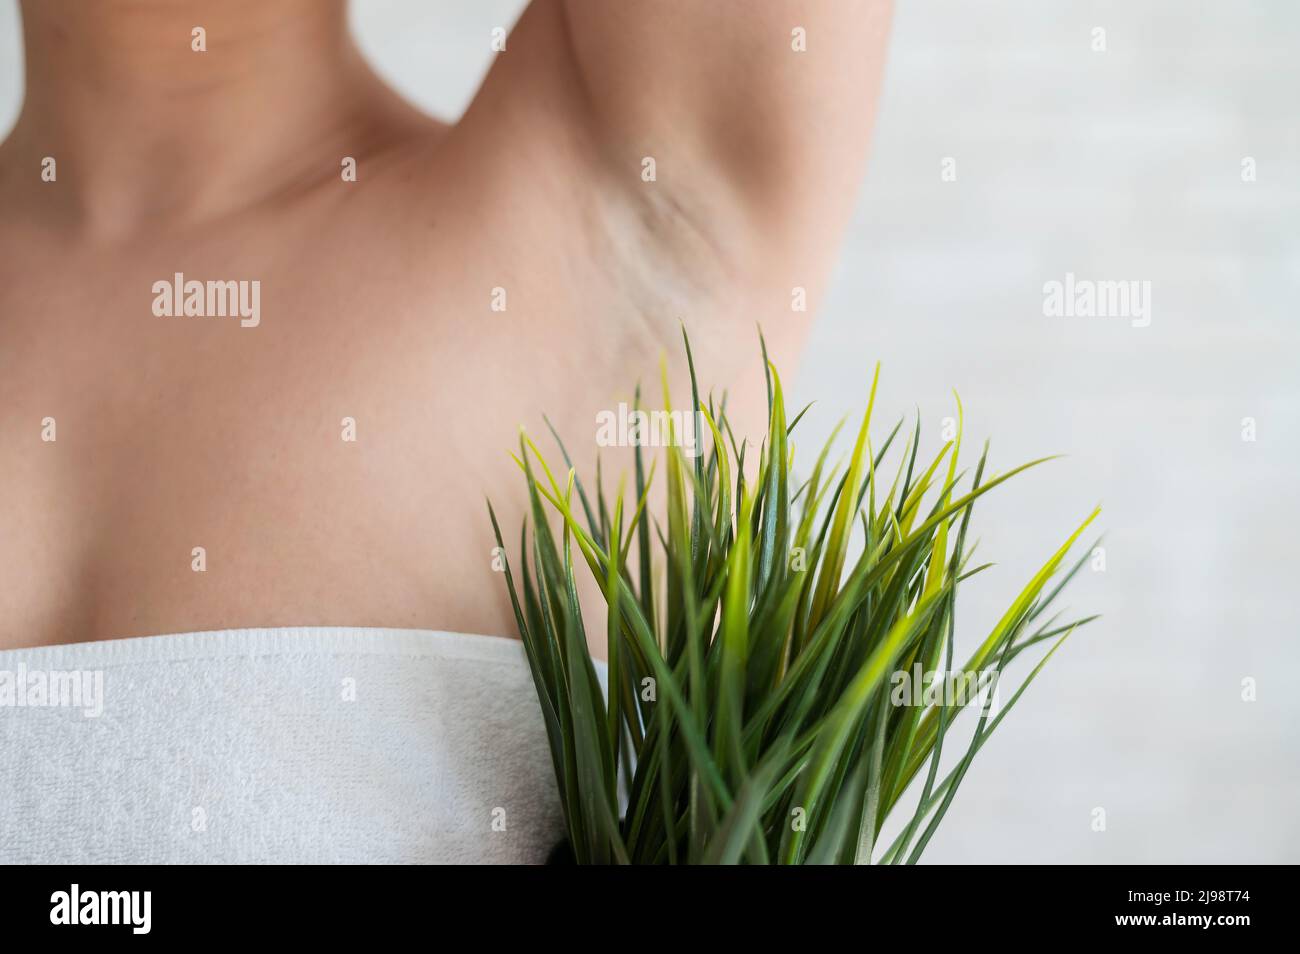 Donna senza volto in un asciugamano bianco tiene una pentola con una pianta. Ragazza irriconoscibile con l'aiuto di cespugli verdi imita la vegetazione dei capelli delle ascelle Foto Stock